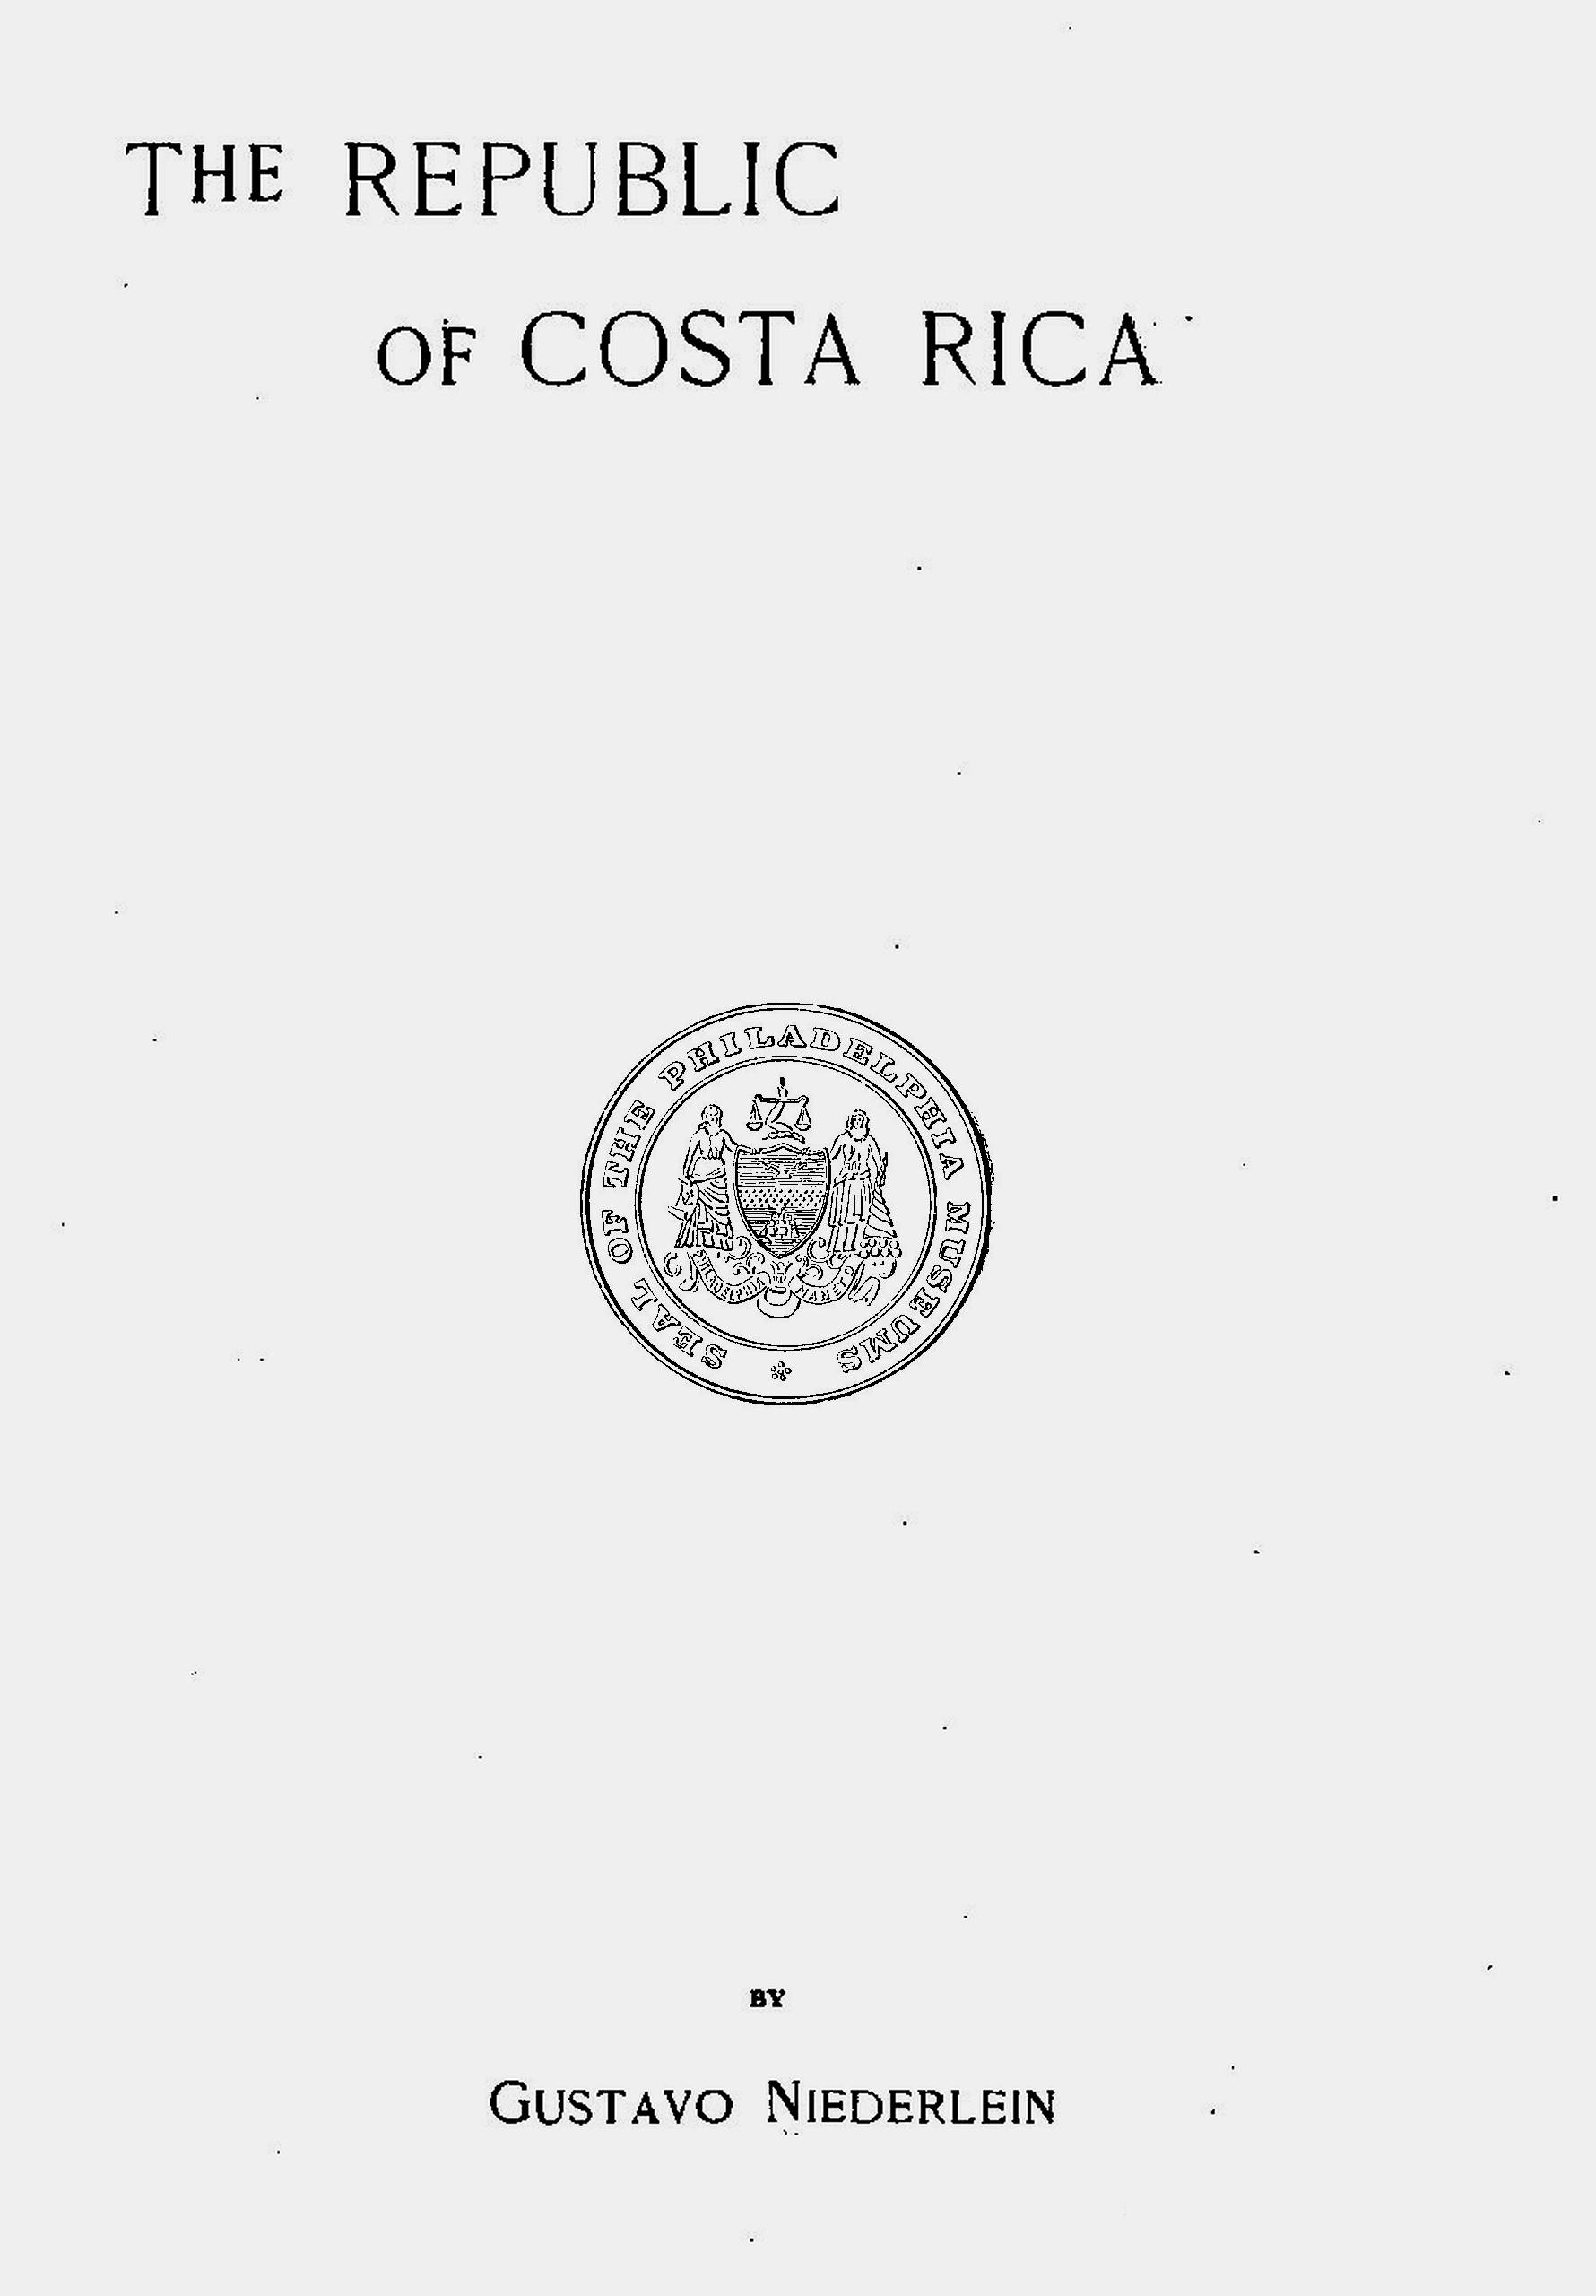 The Republic of Costa Rica